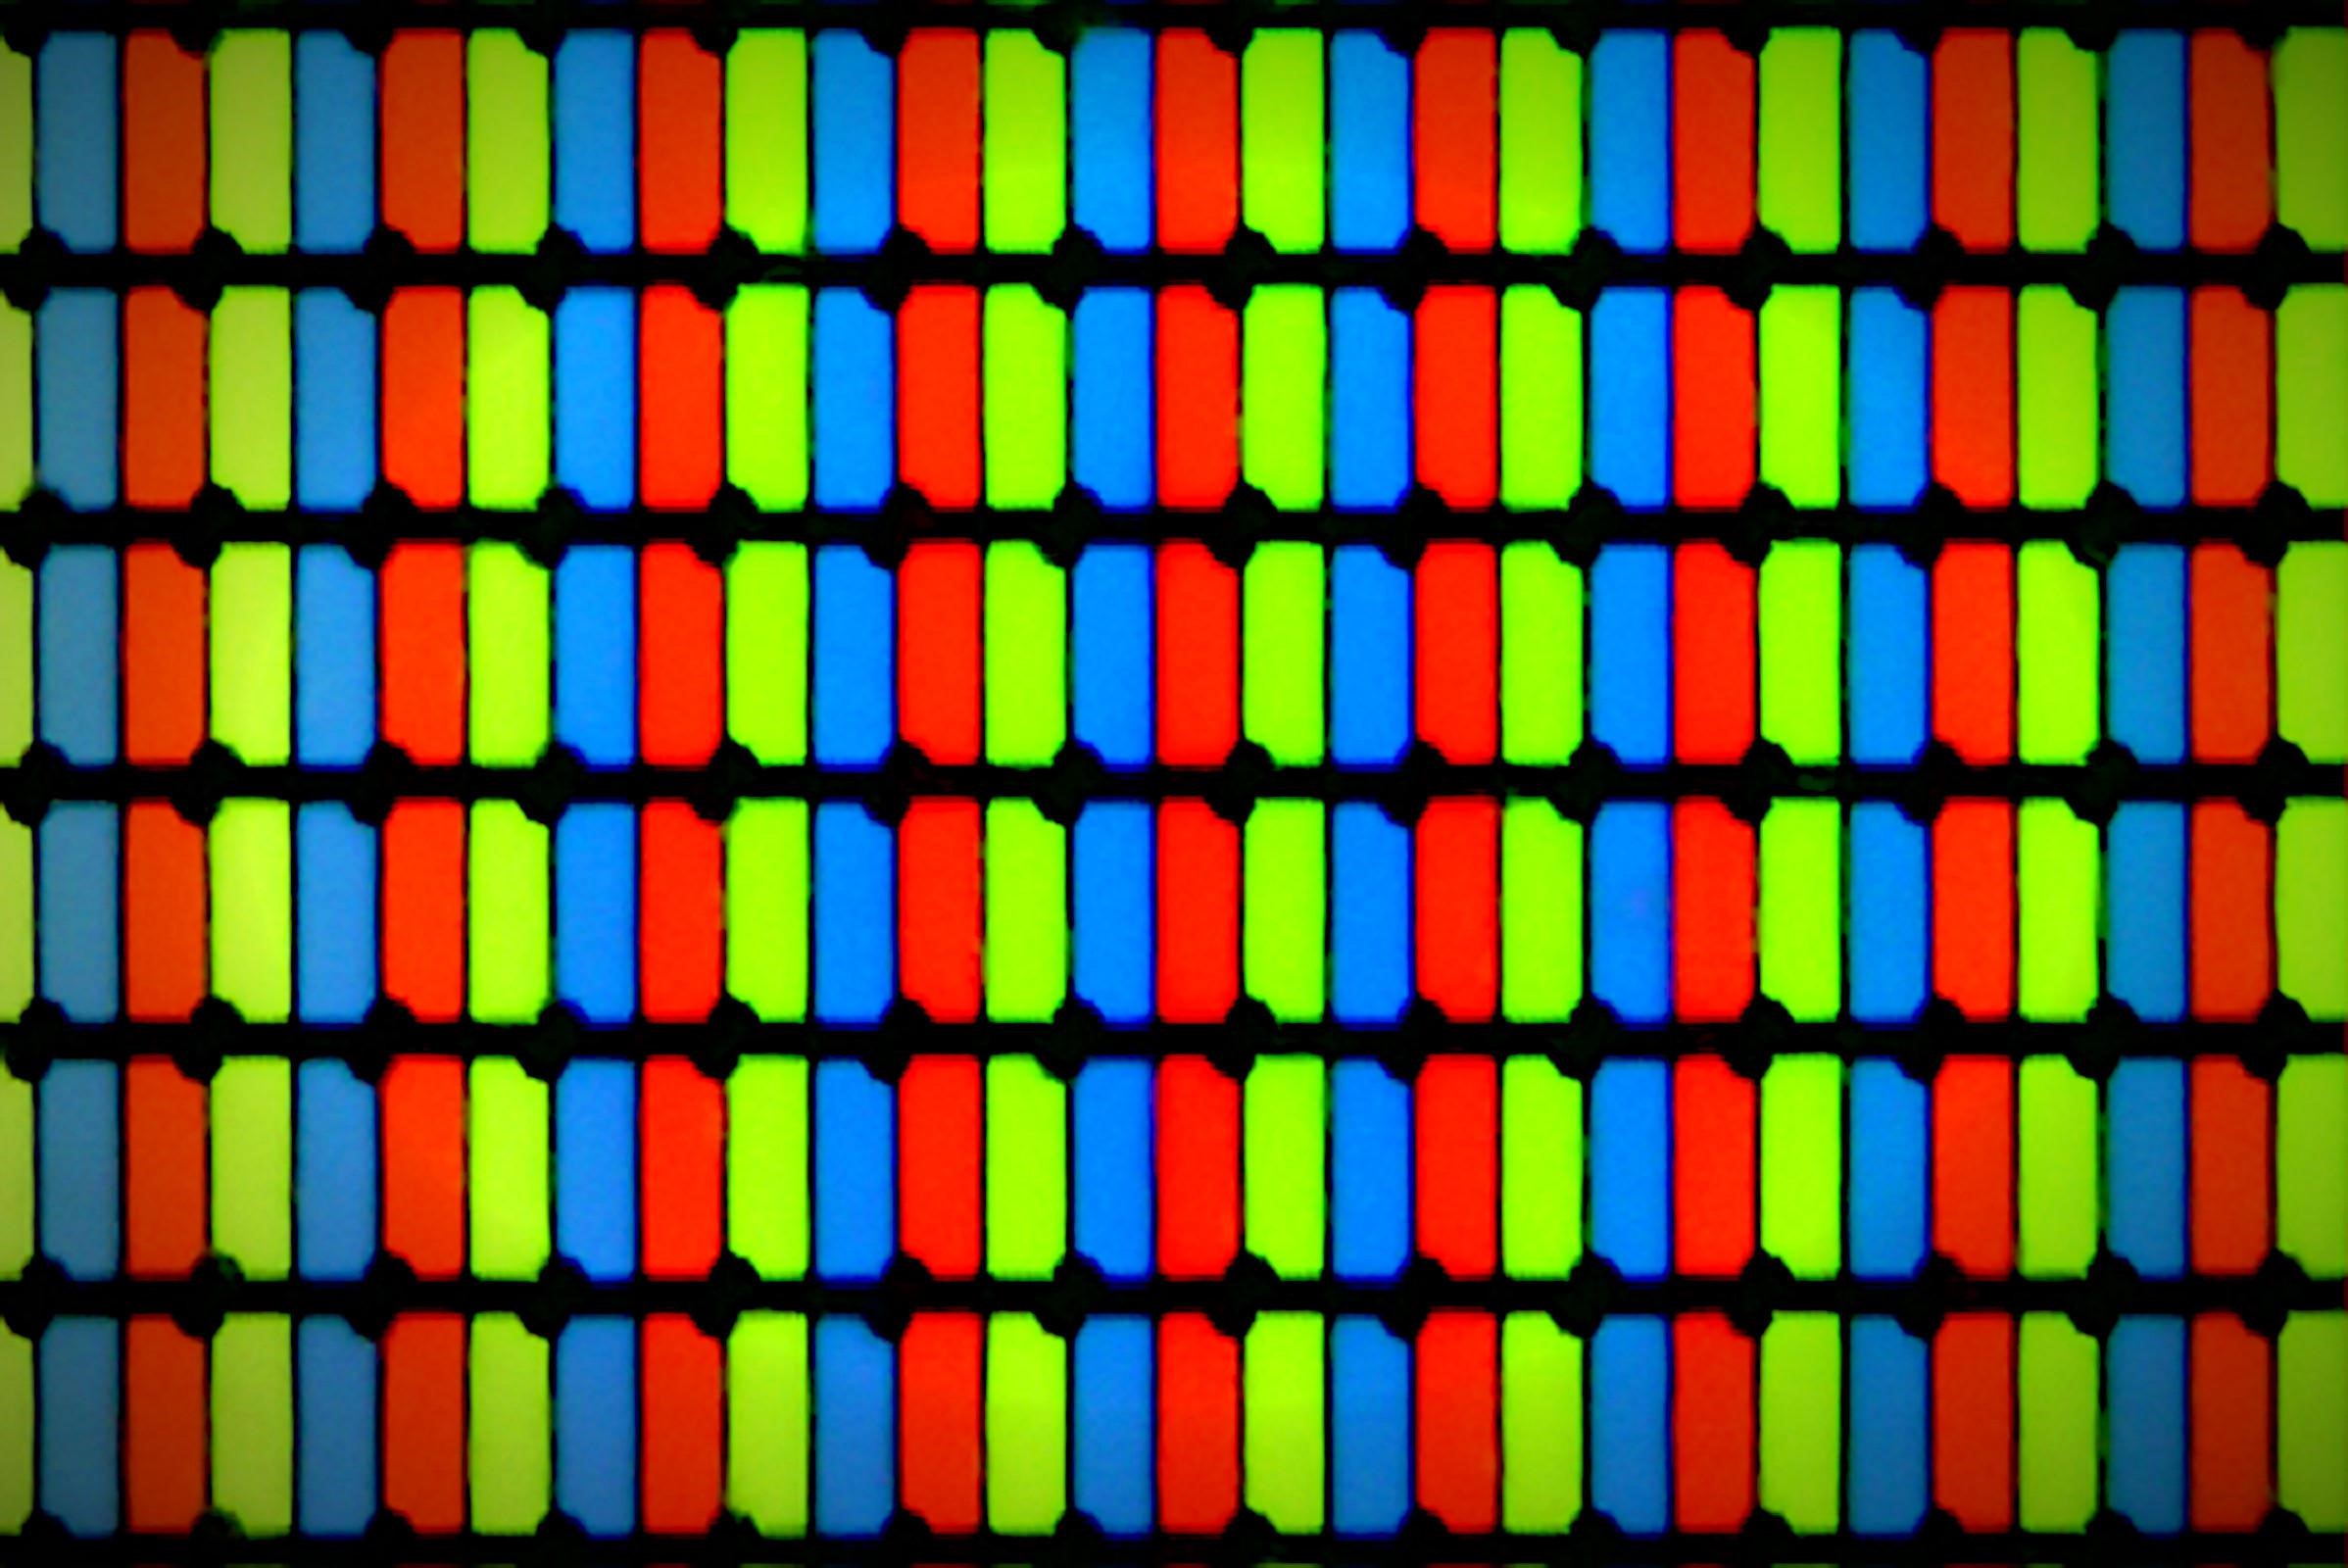 Układ pikseli w typowej matrycy TFT LCD